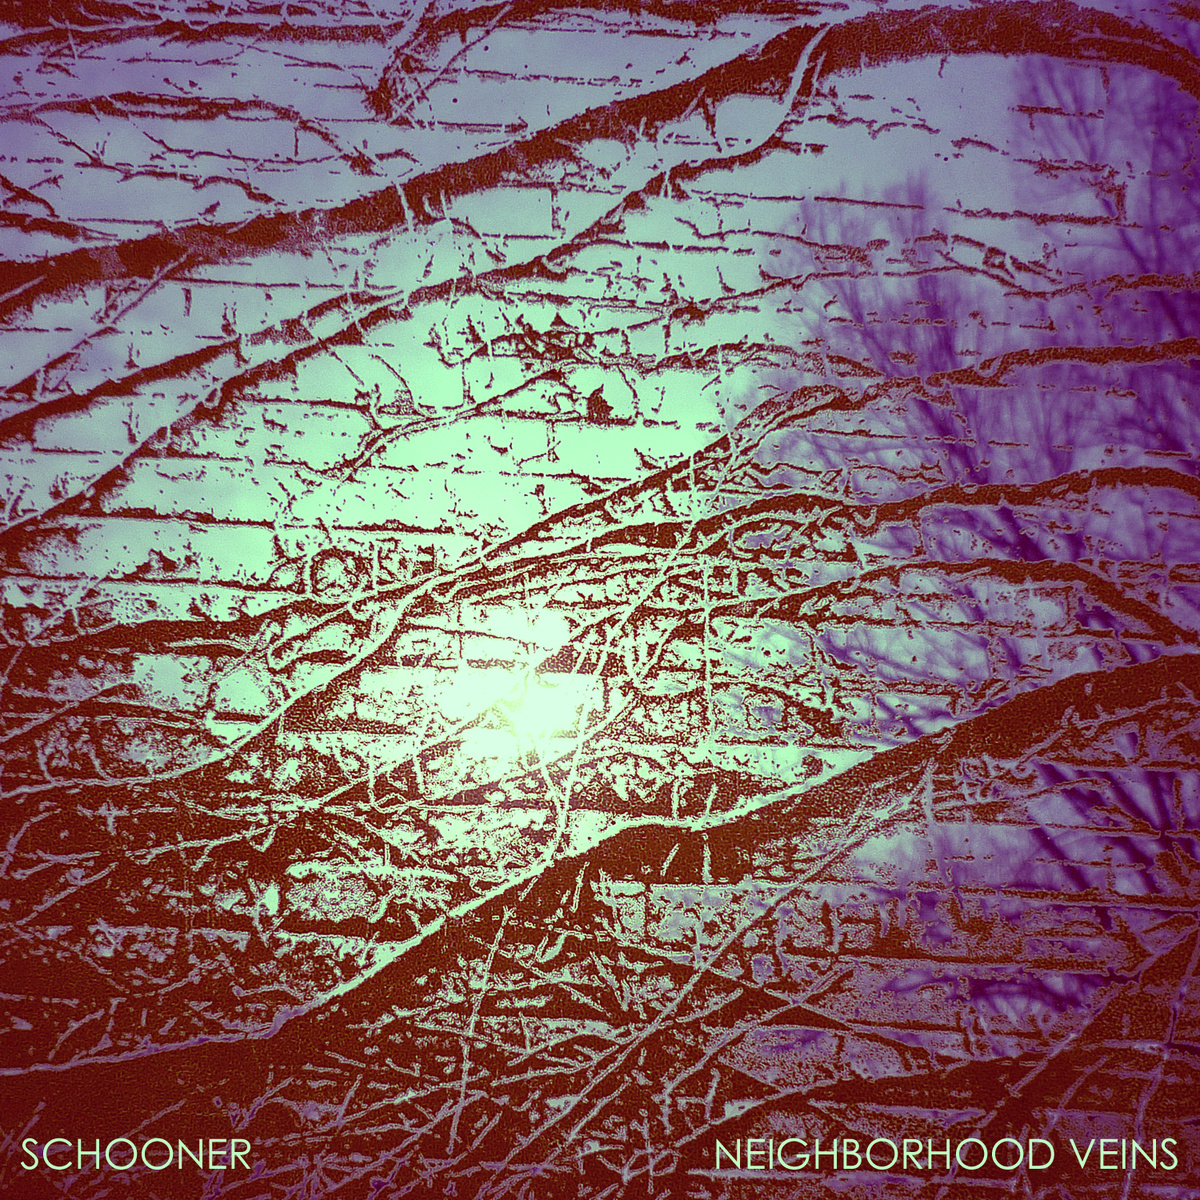 Schooner – “Neighborhood Veins” Review